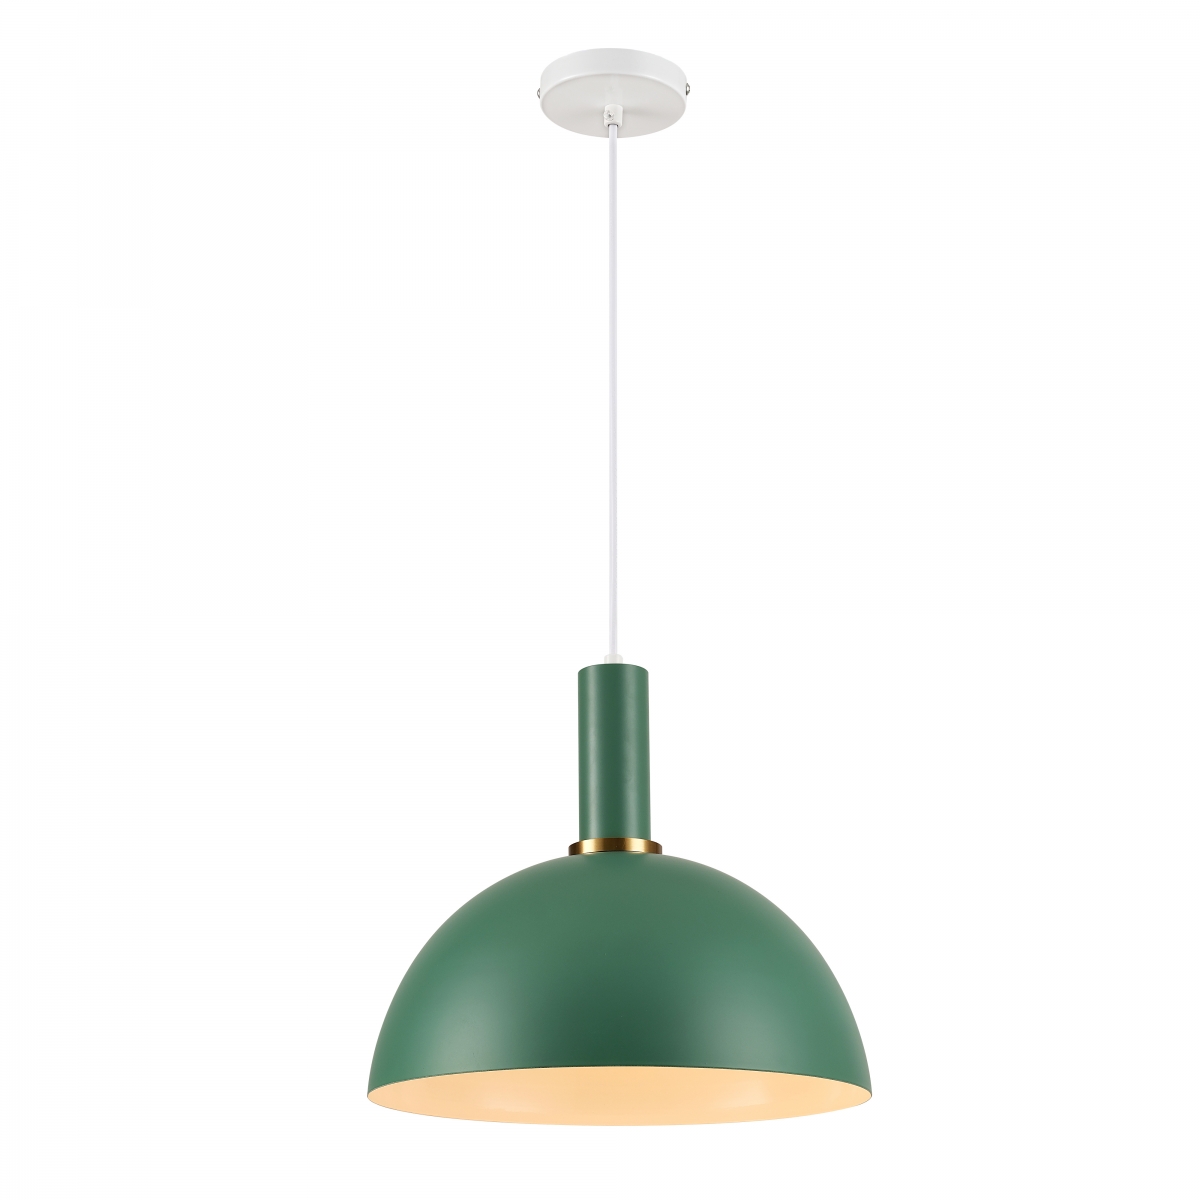 Lampa wisząca Omega, 30 cm średnica, styl skandynawski, zielona